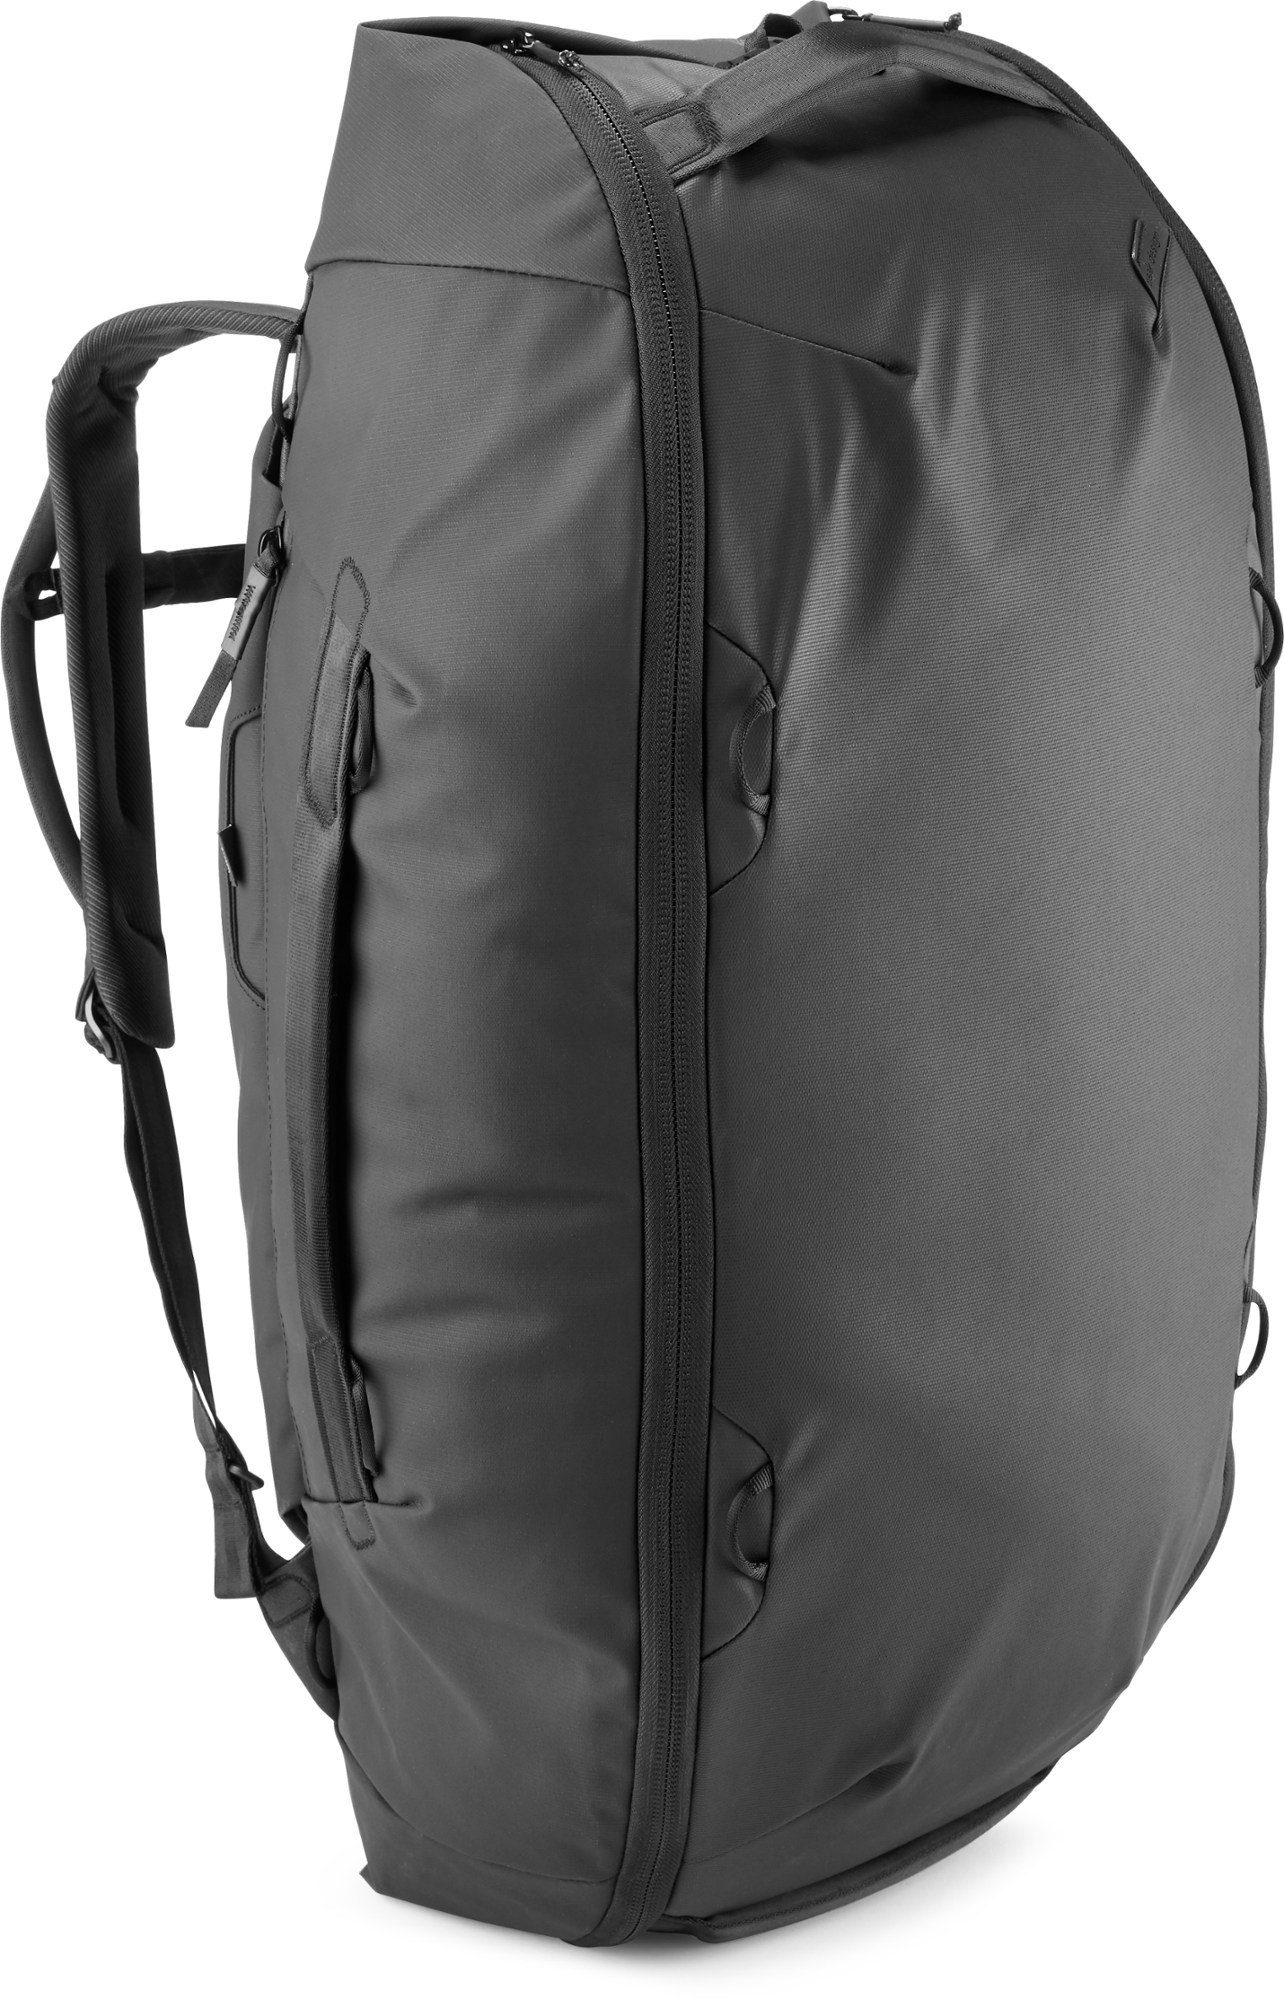 Дорожный спортивный рюкзак - 65 л Peak Design, черный цена и фото